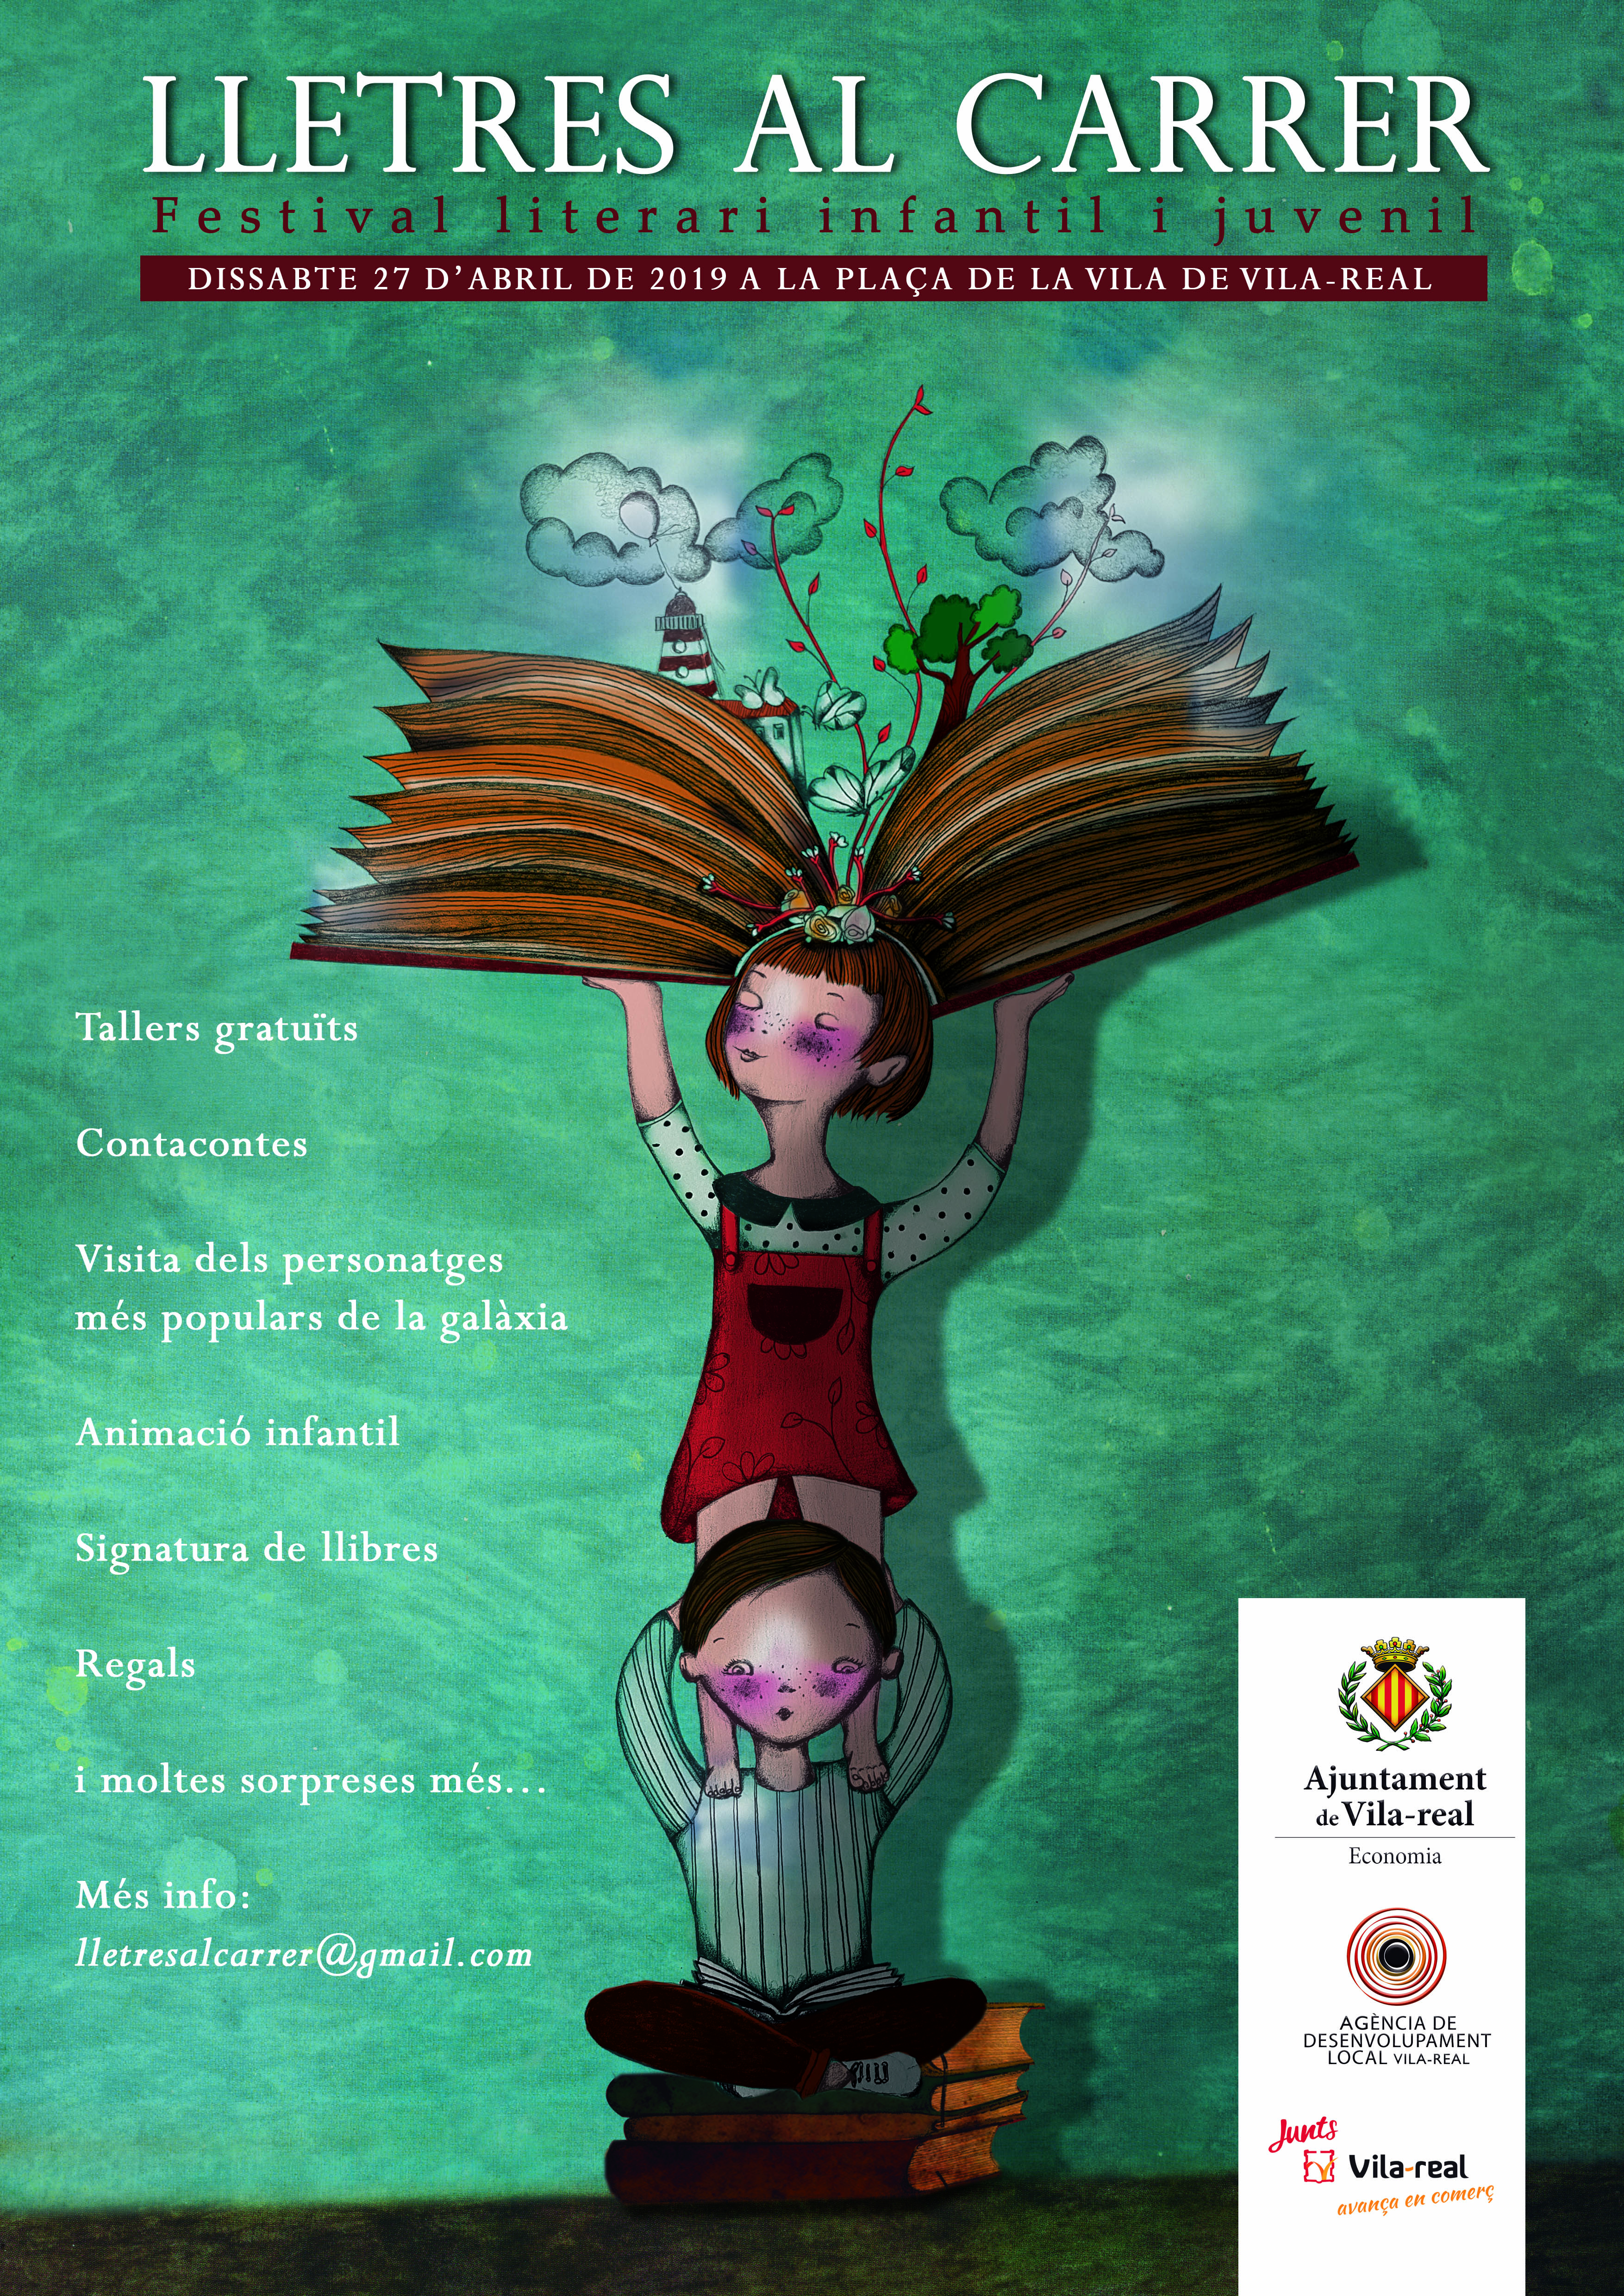 Lletres al Carrer - Festival de literatura infantil i juvenil